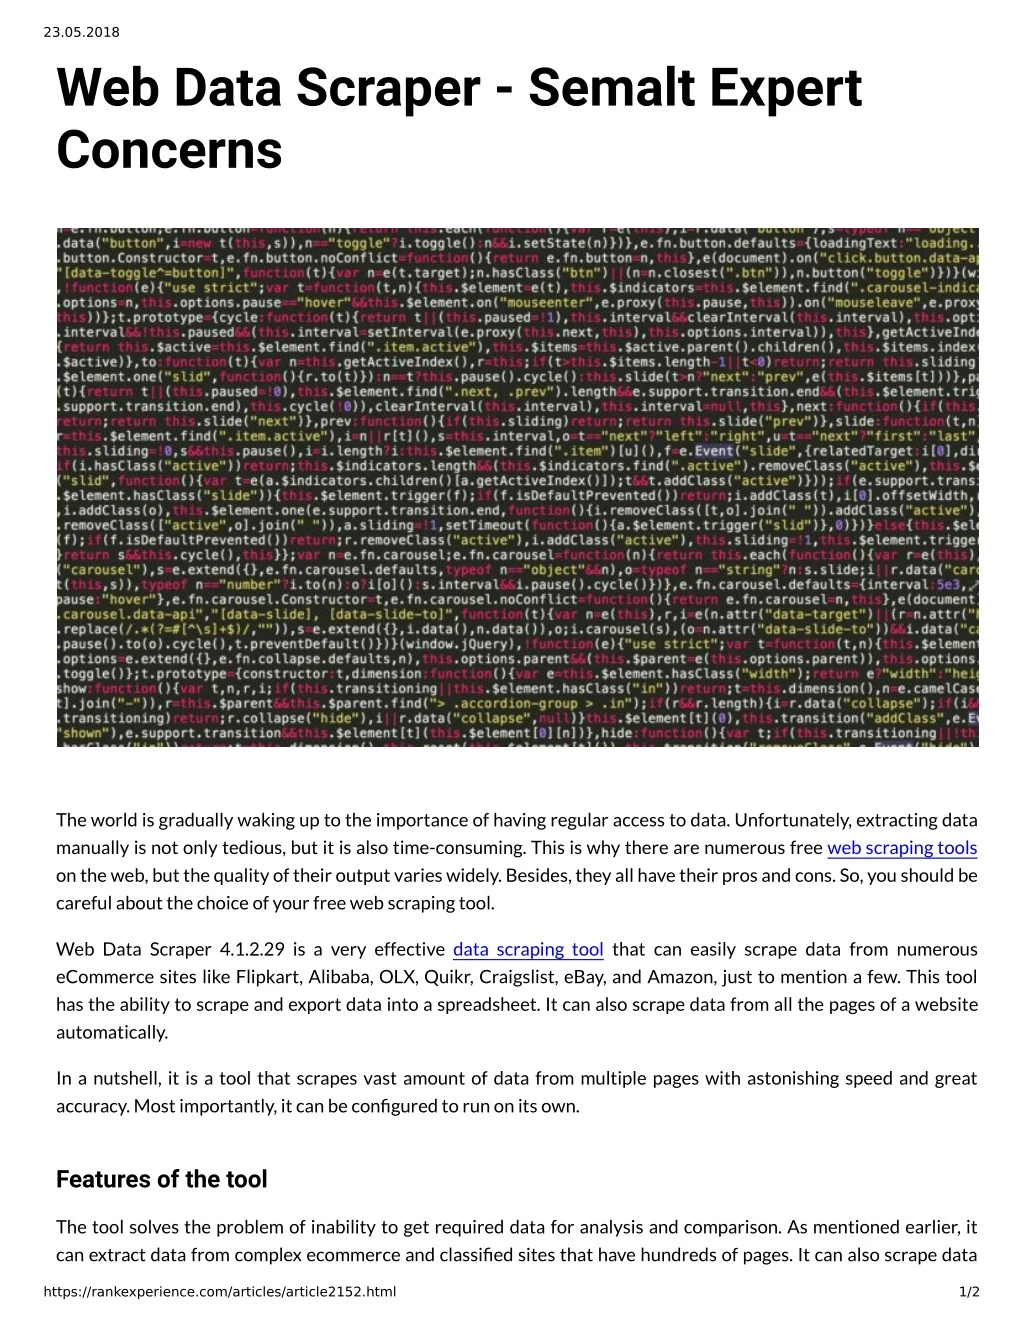 23 05 2018 web data scraper semalt expert concerns